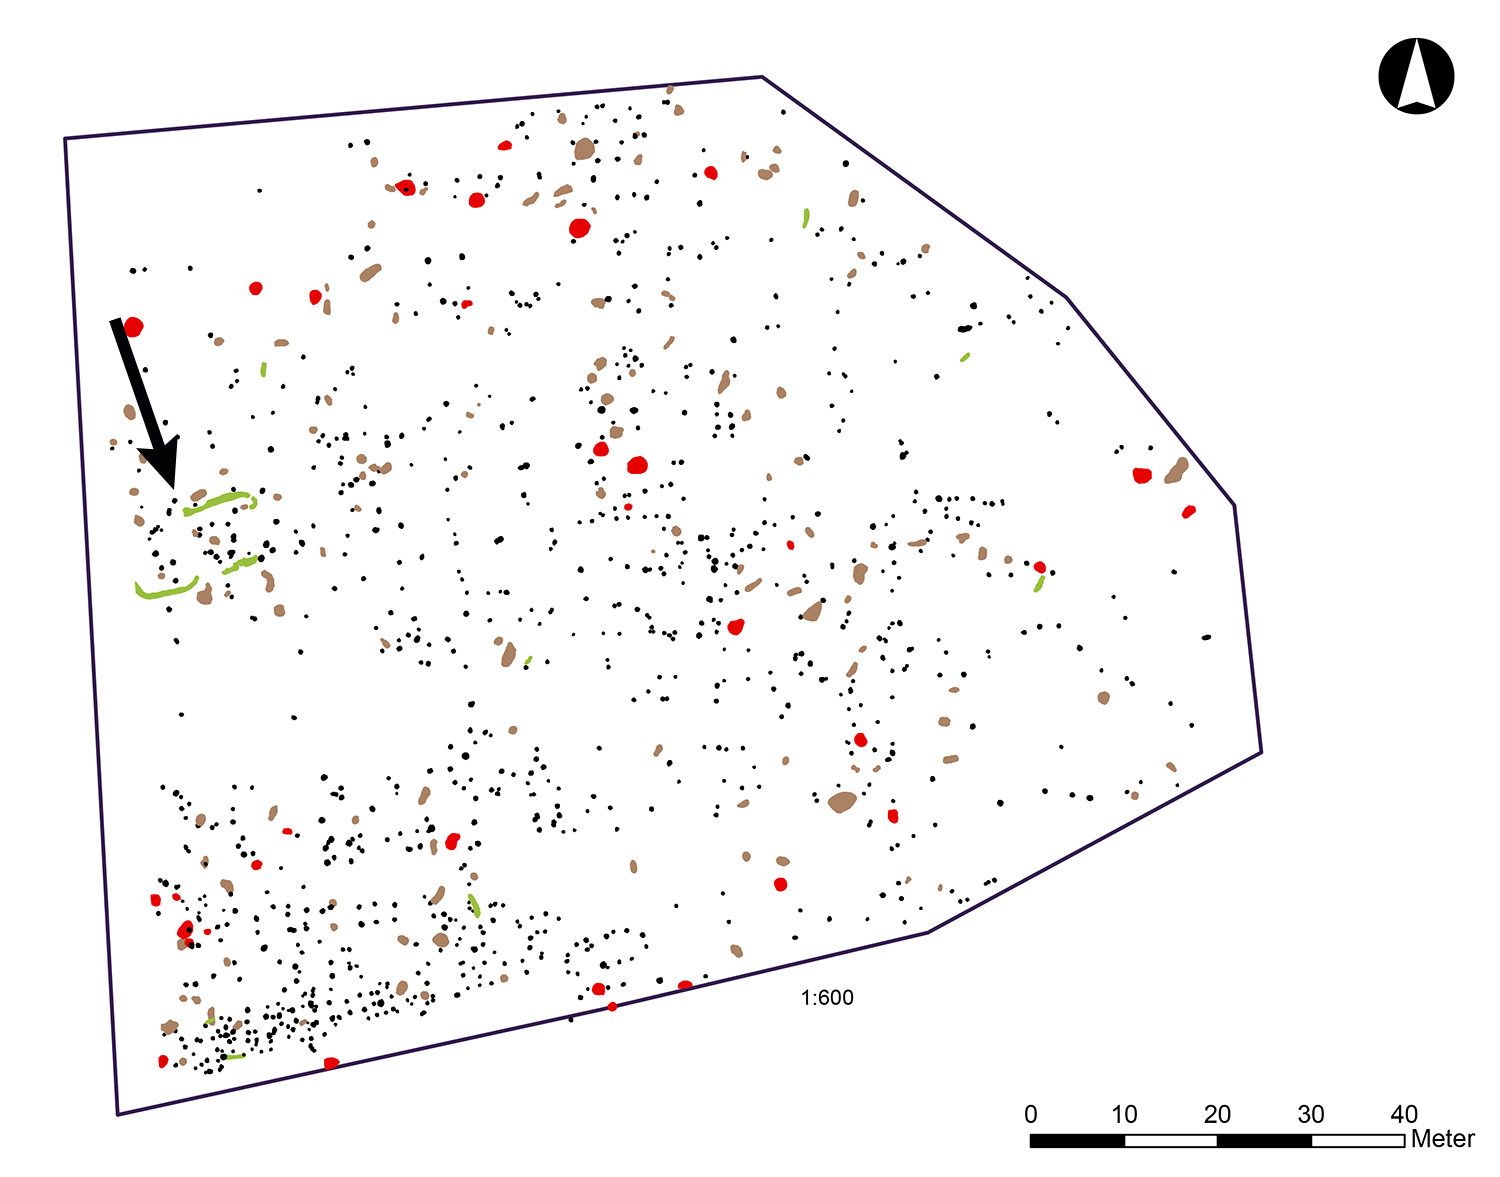 Plankarta över den västra delen av undersökningsytan. Totalt registrerades inte mindre än cirka 2 000 anläggningar, det vill säga stolphål, gropar, härdar, rännor osv. Stolphålen är markerade med svart, gropar med brunt, härdar med rött och rännor med grönt. 